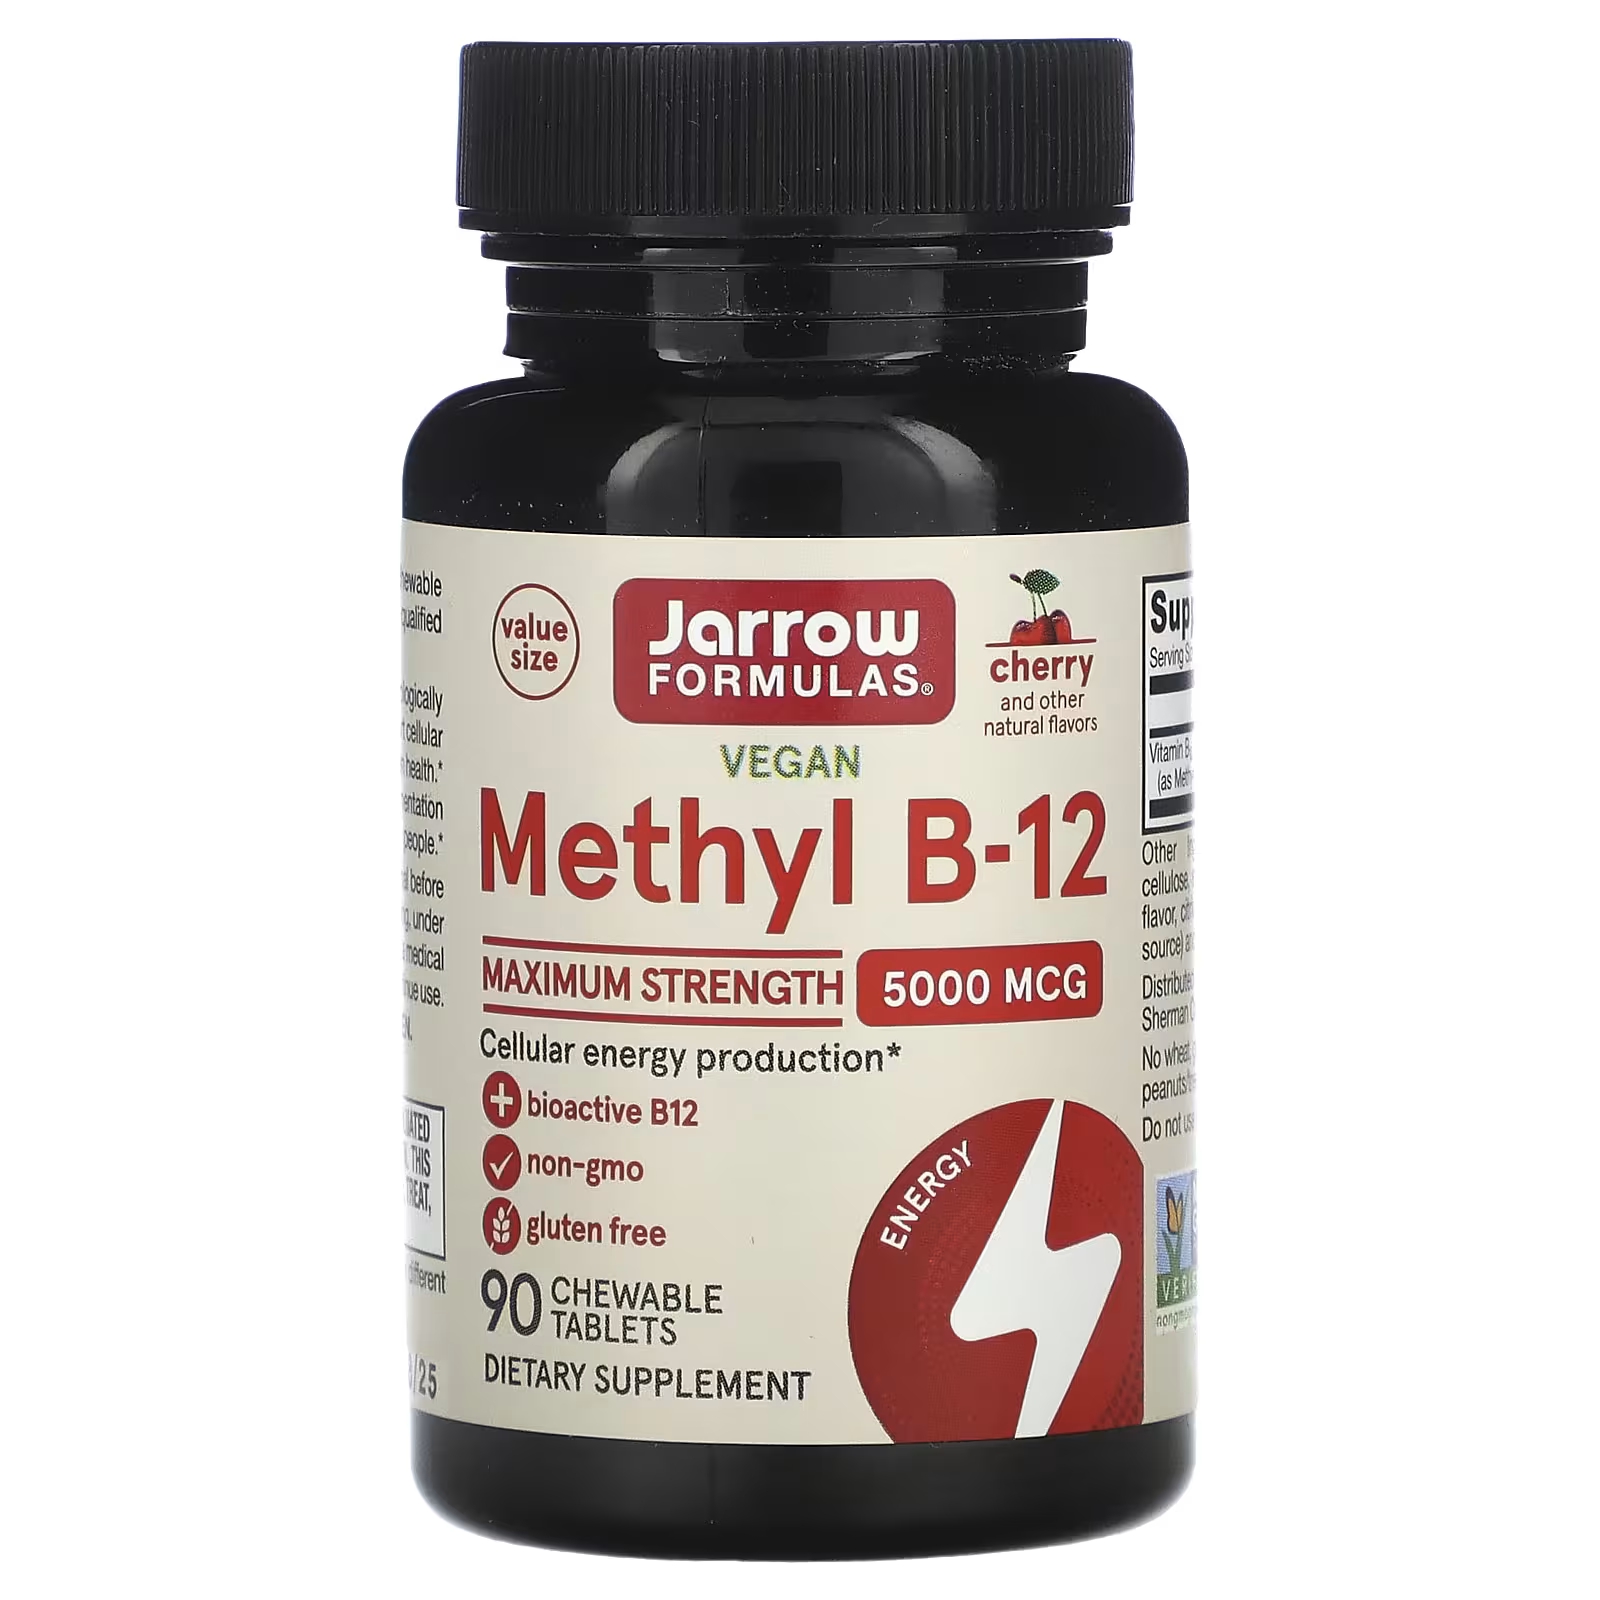 Пищевая добавка Jarrow Formulas Vegan Mmethyl B-12 вишня, 90 жевательных таблеток пищевая добавка jarrow formulas vegan mmethyl b 12 вишня 90 жевательных таблеток